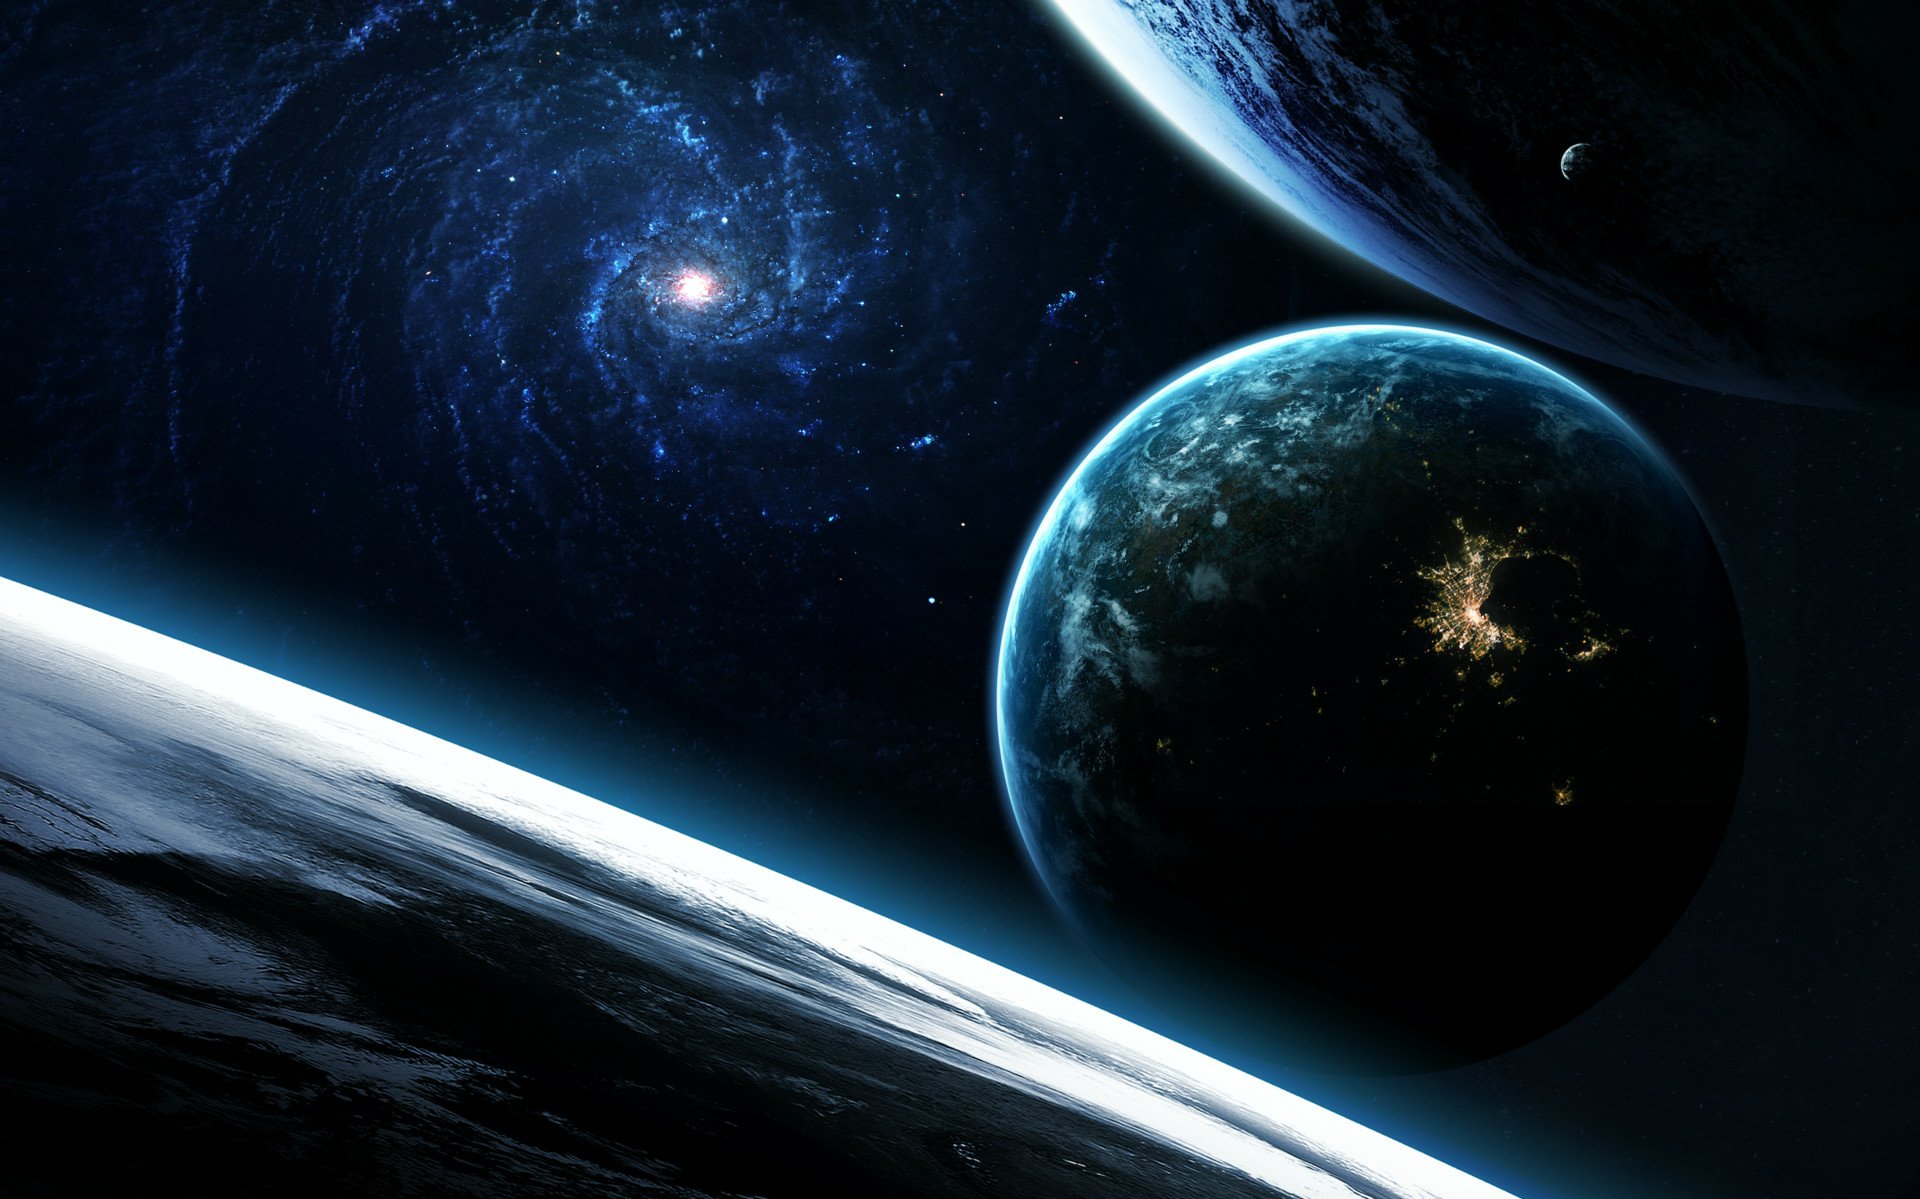 Download Sci Fi Planet Hd Wallpaper By Vadim Sadovski